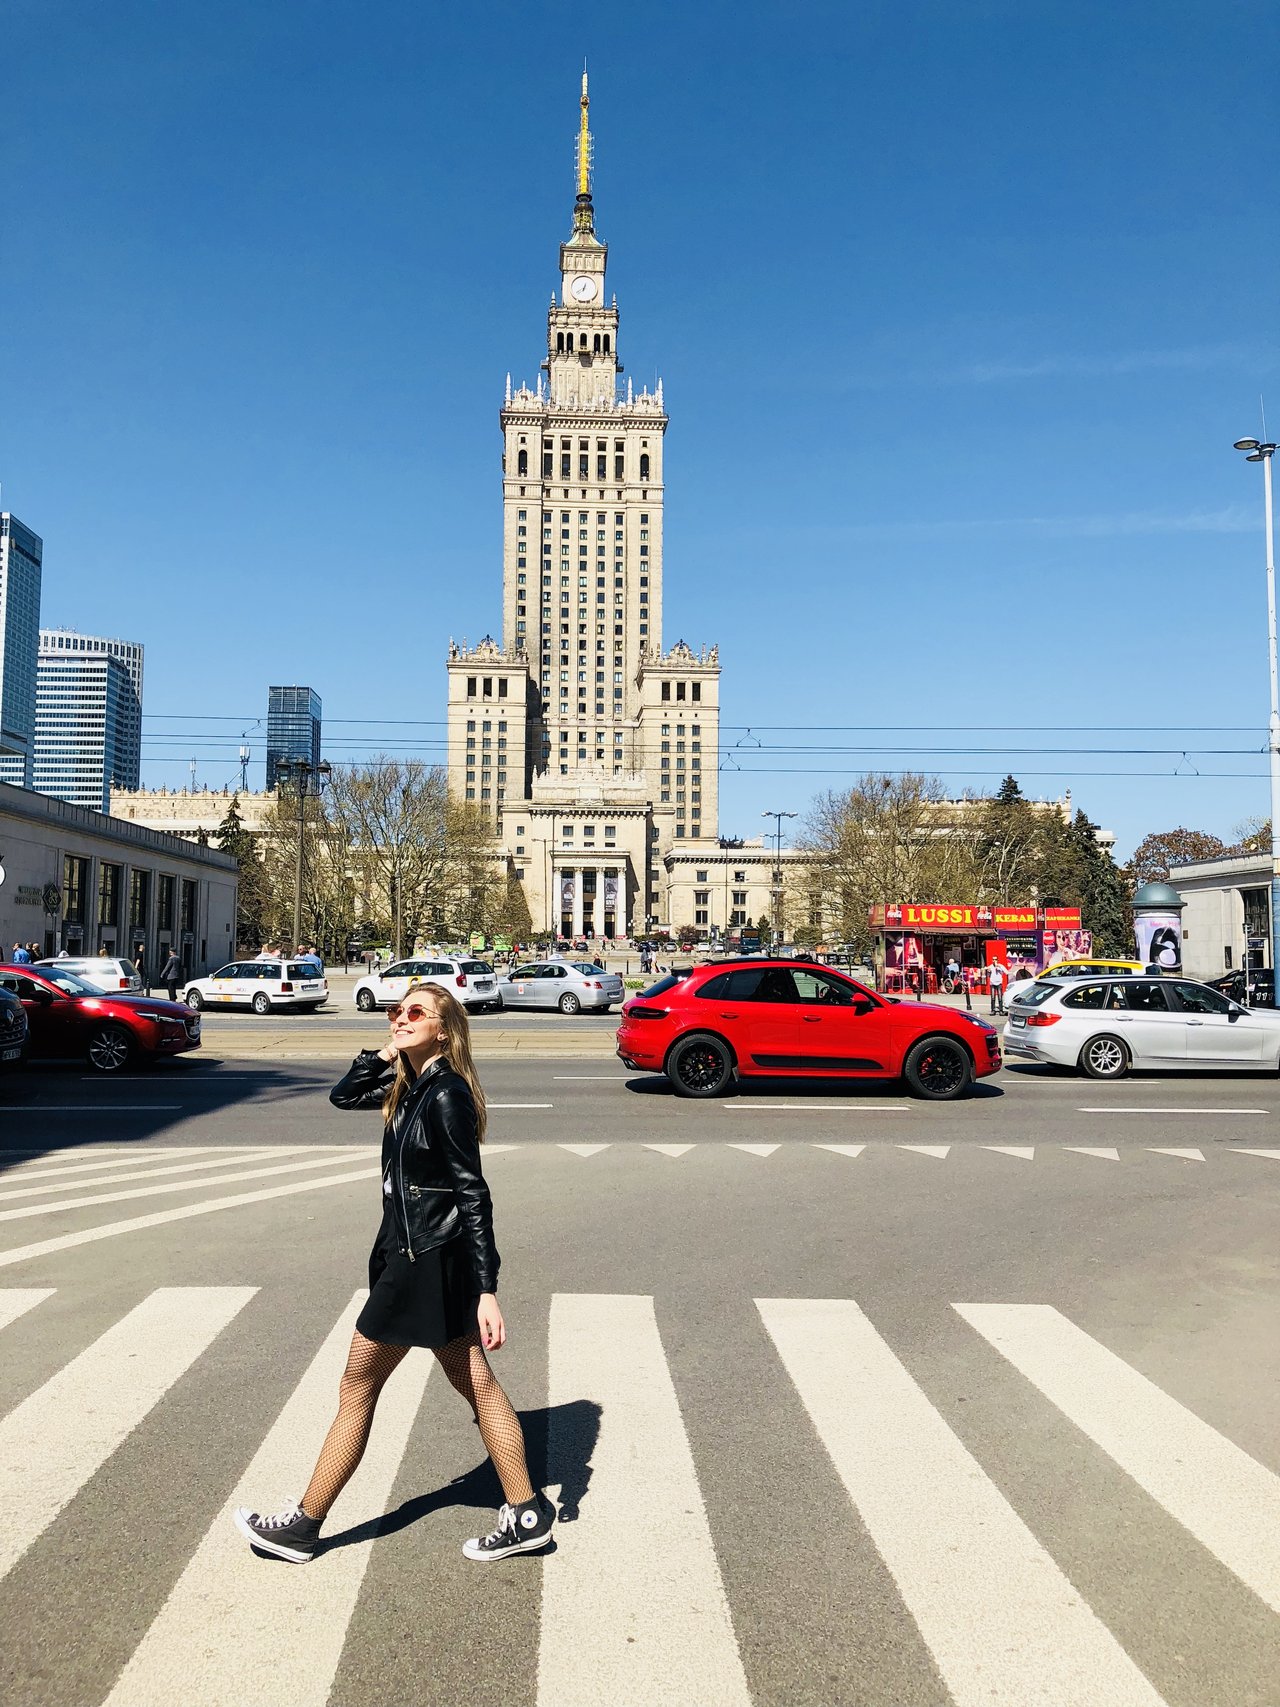 Varšava <3
https://www.instagram.com/natalyadameova/